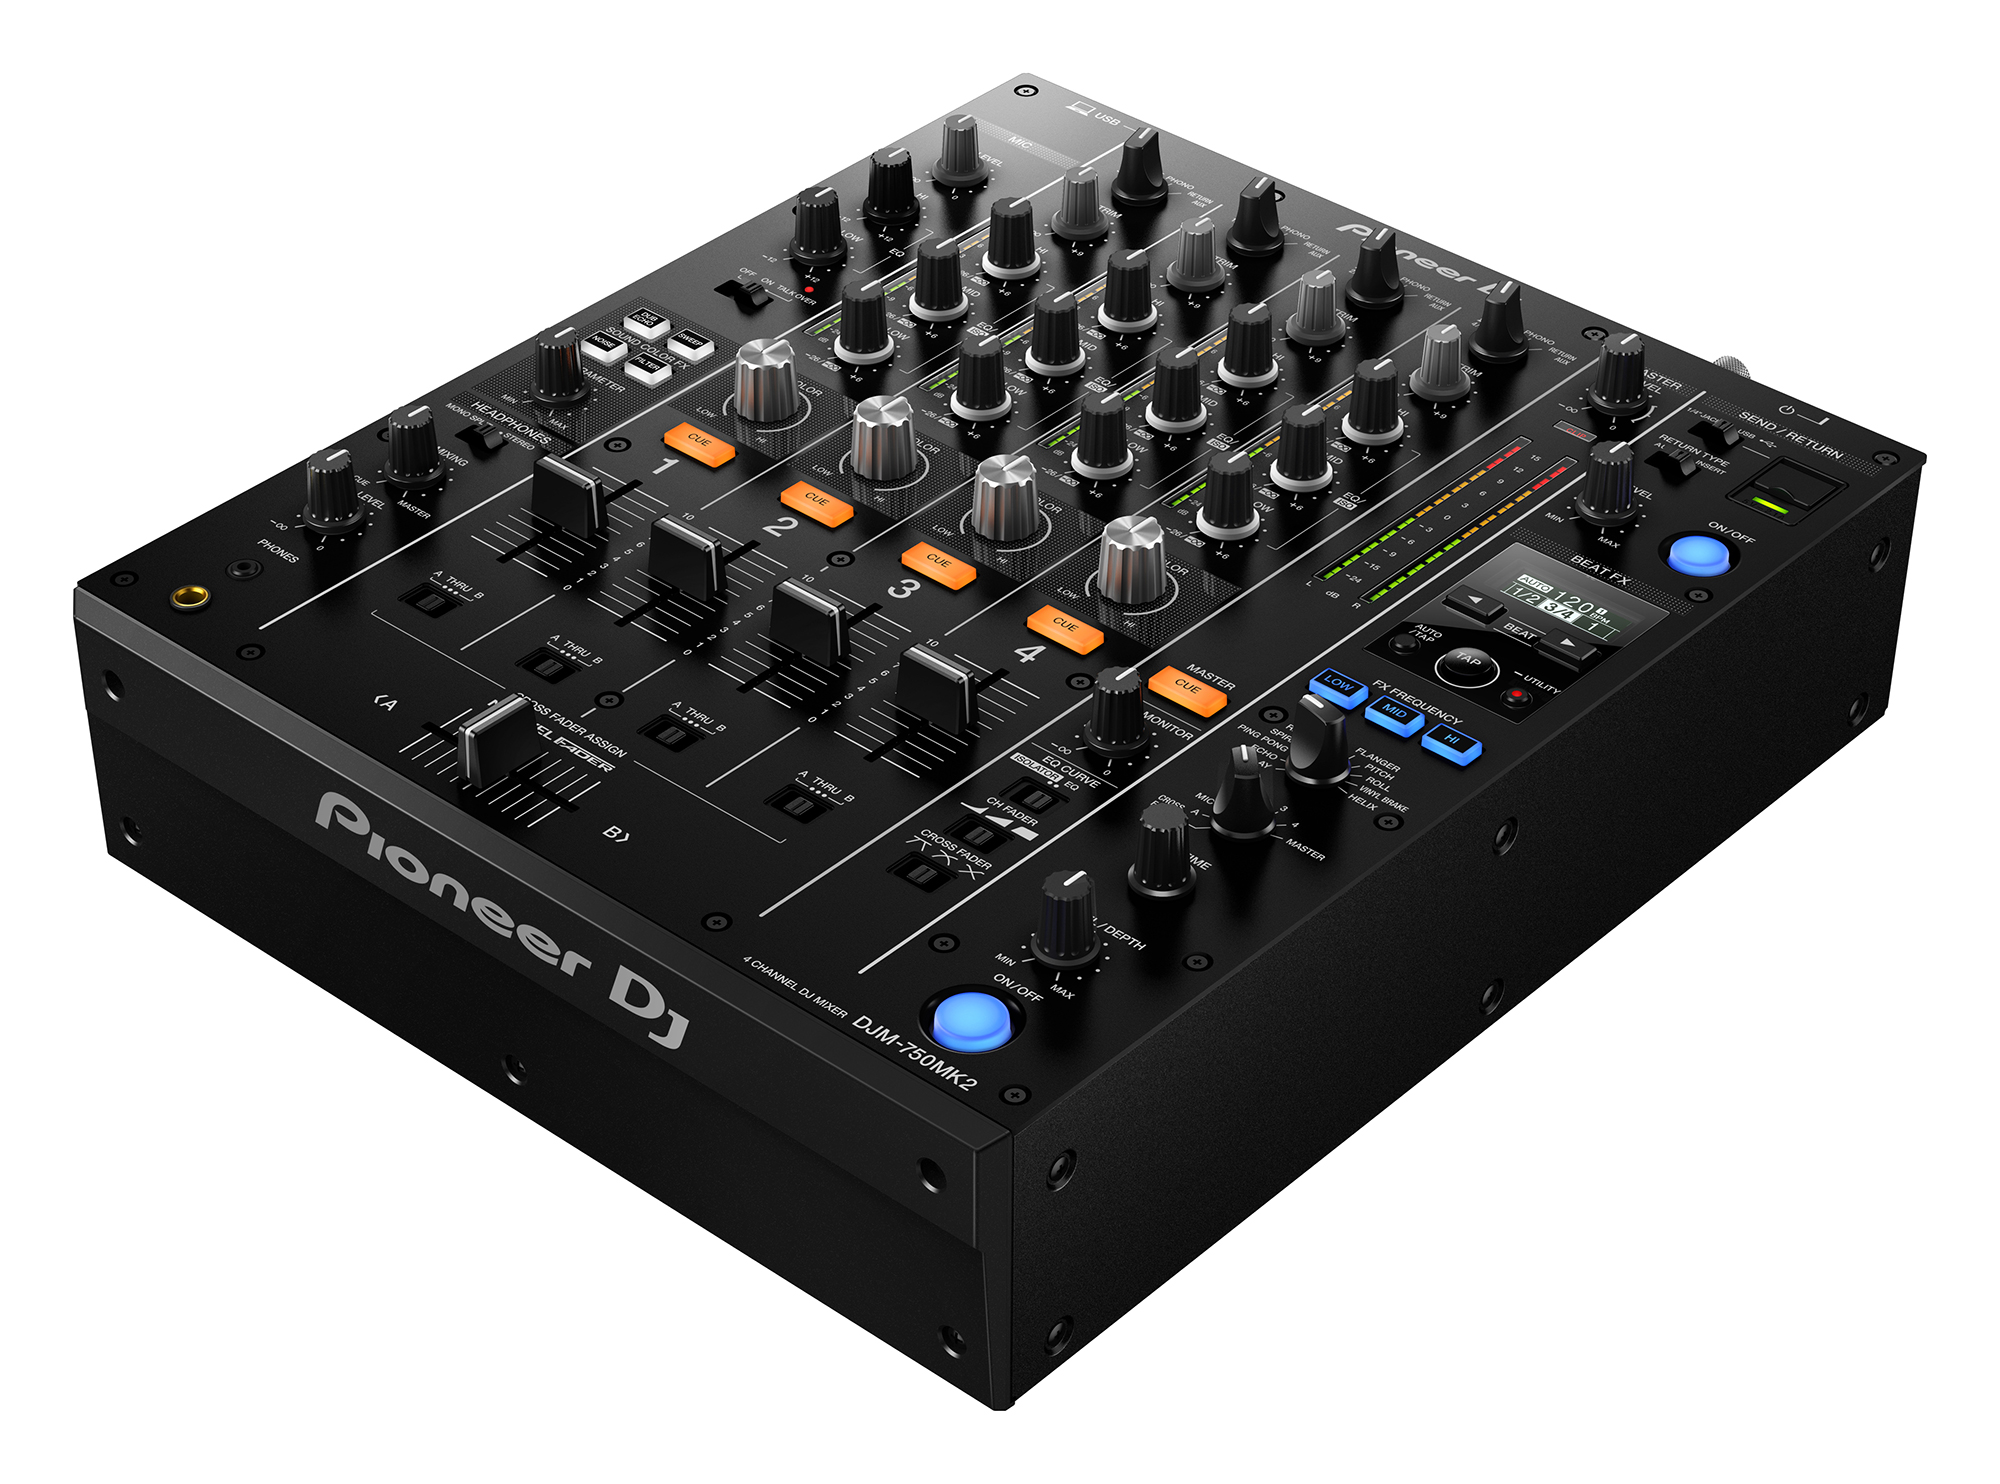 Nuevo mixer Pioneer DJM-750MK2 ya a la venta